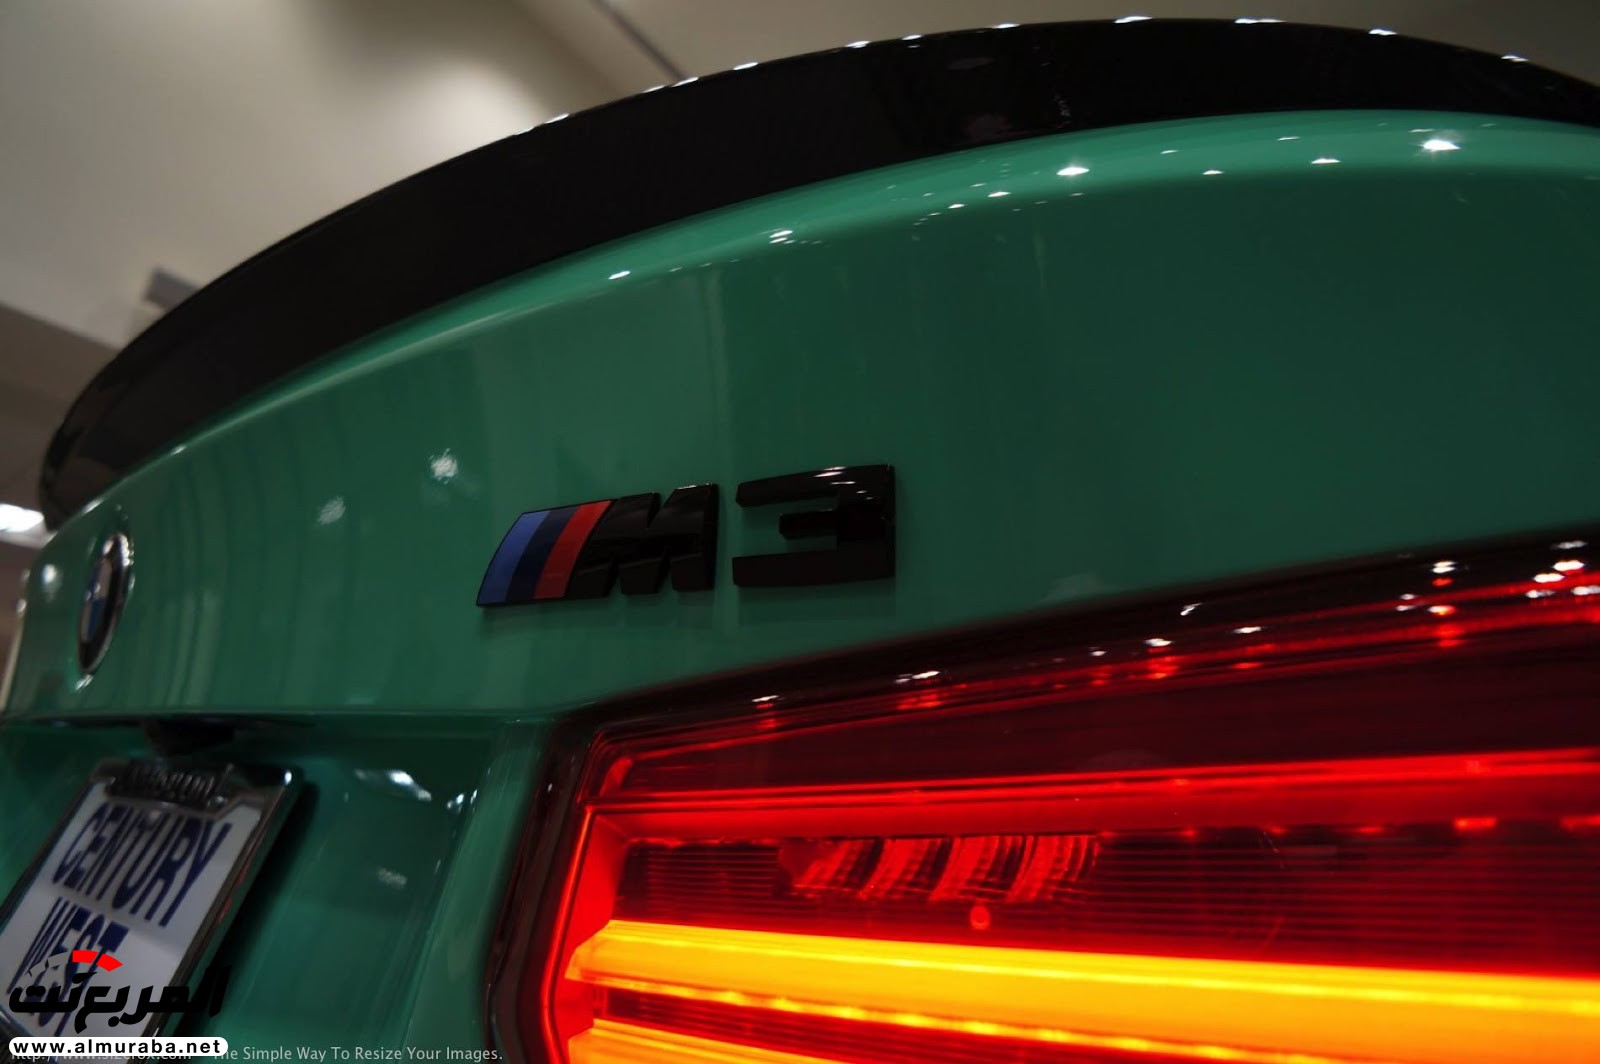 "بالصور" شاهد "بي إم دبليو" F80 M3 الخاصة بطلاء النعناع الأخضر BMW 102